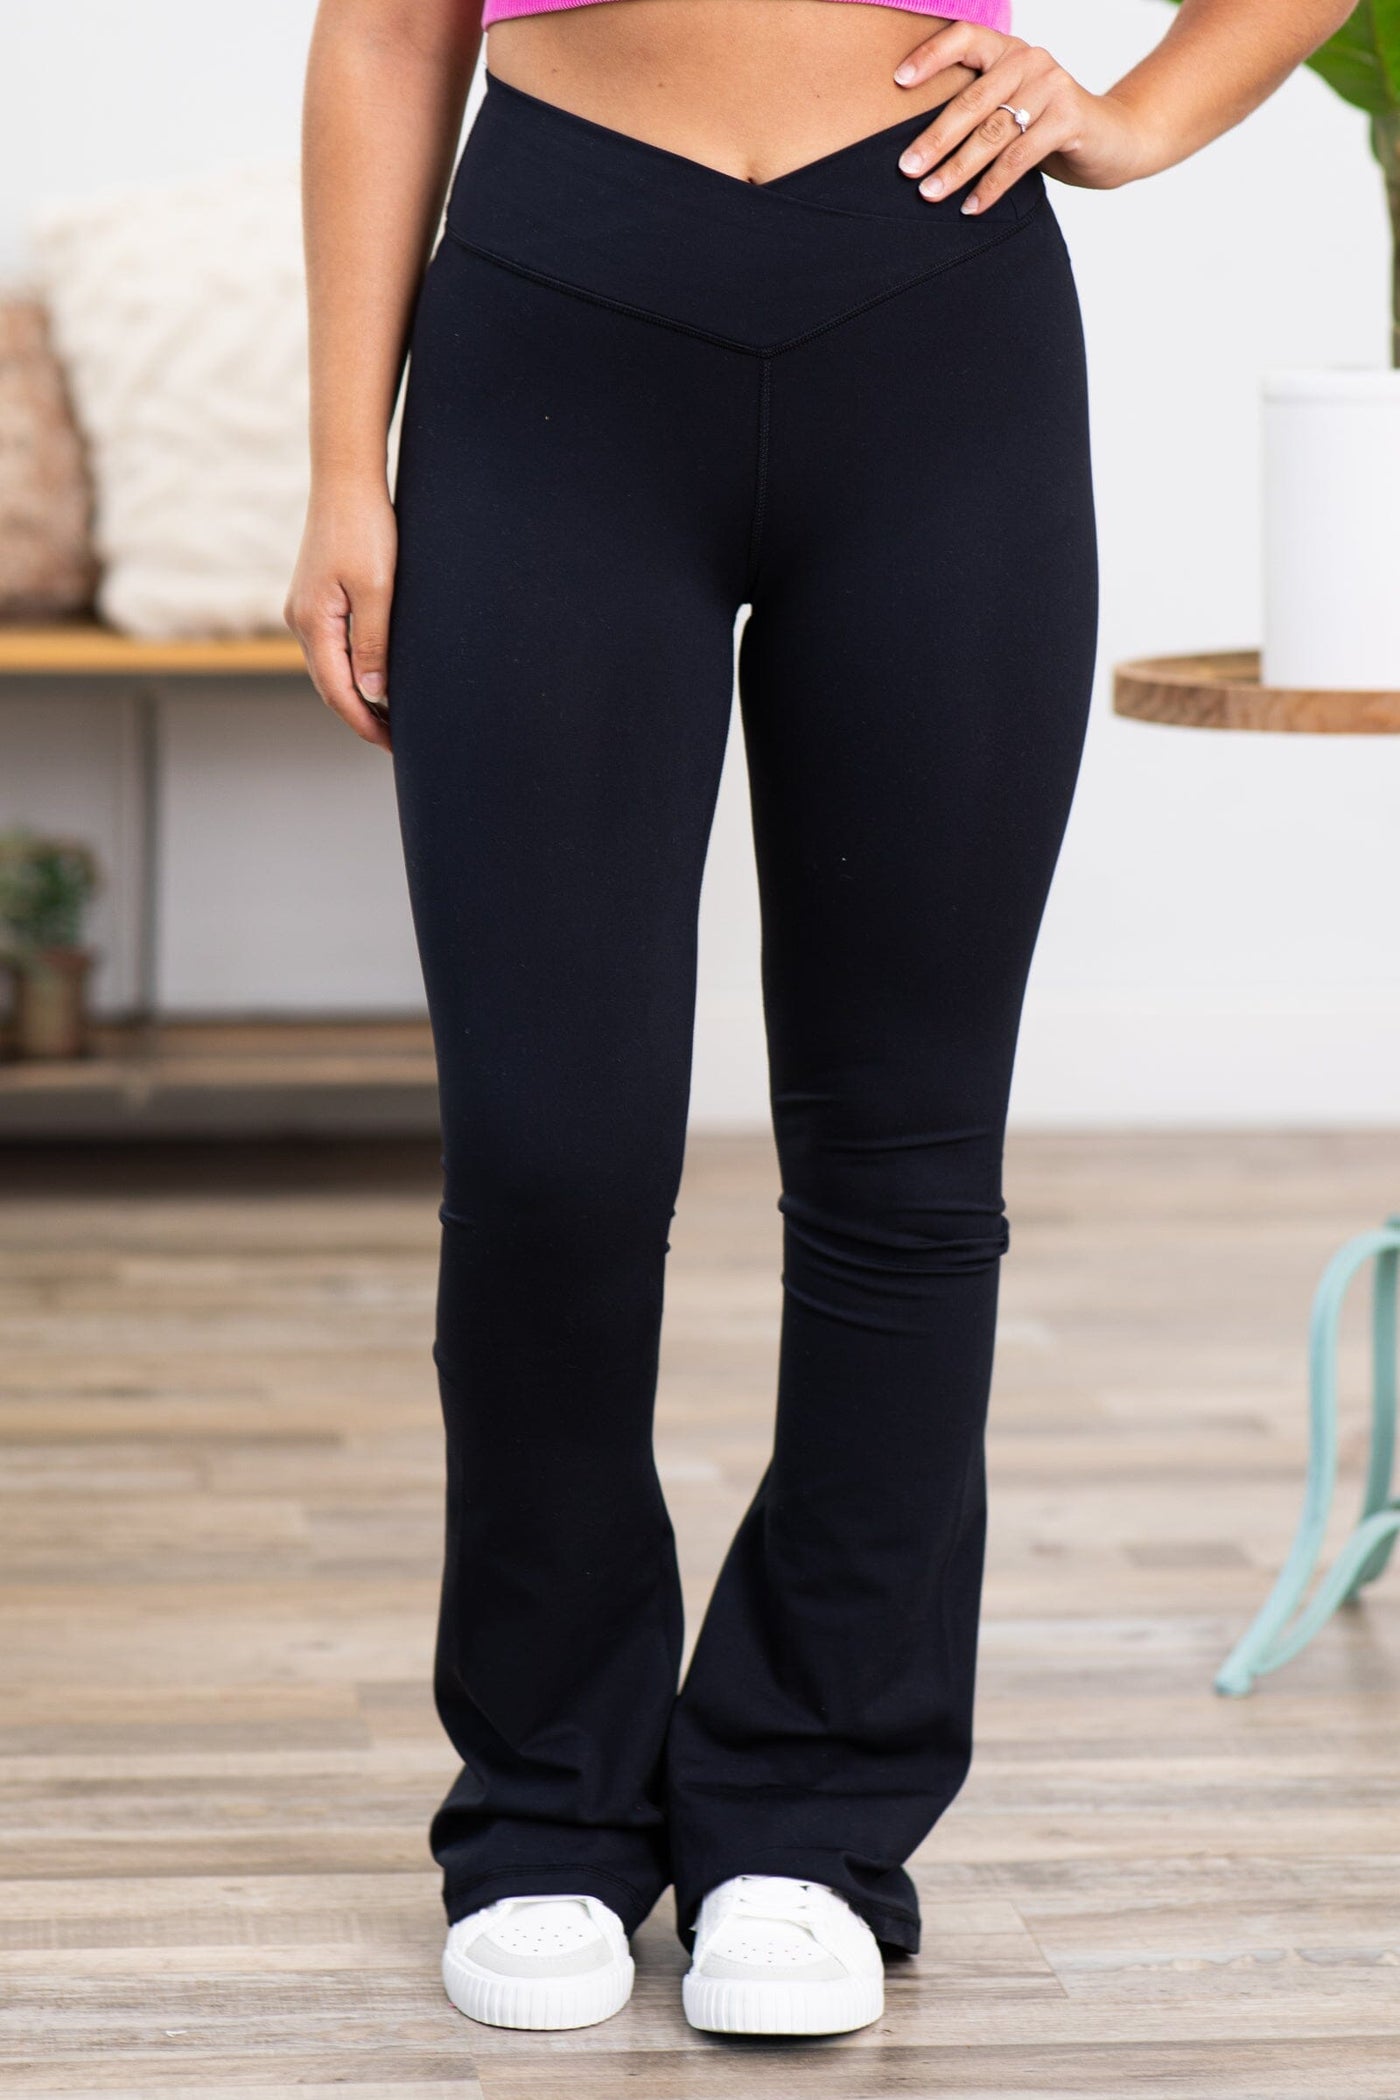 14 Black Flare Pants to Wear Instead Of Leggings by danielhardy0007 on  DeviantArt